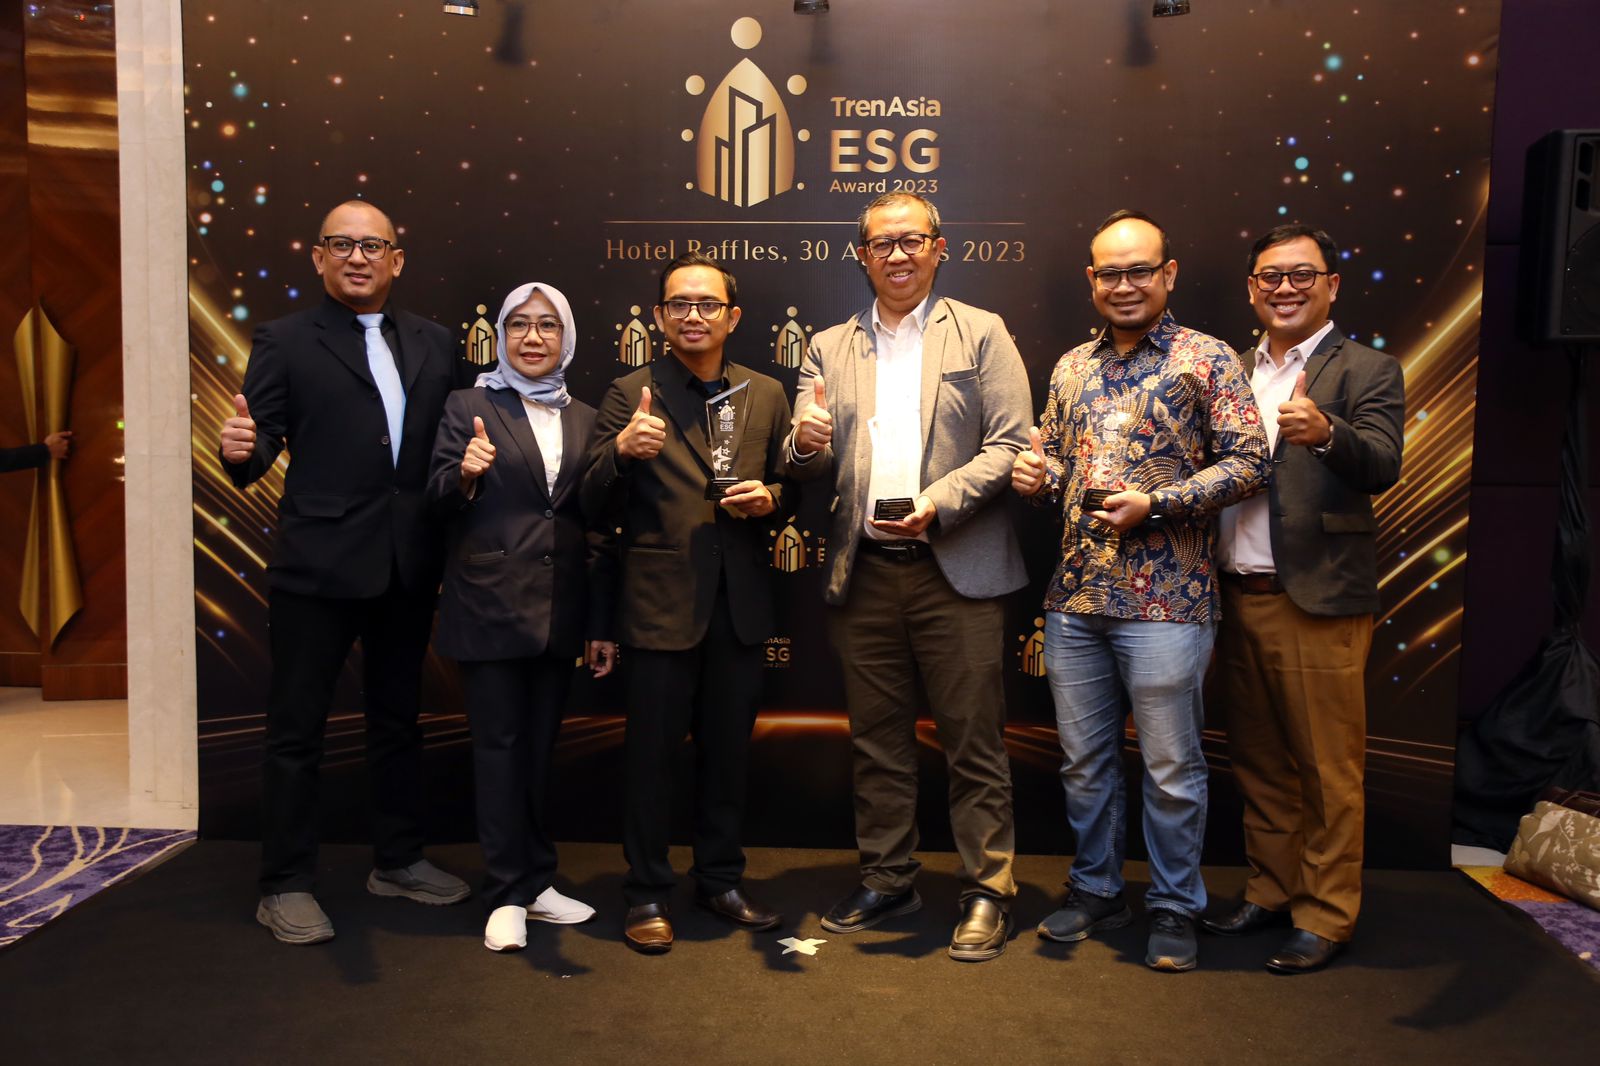 PLN Group mendapatkan 3 penghargaan pada "TrenAsia ESG Award 2023", PT PLN (Persero) untuk BUMN _Category for Action_, PLN Gas & Geothermal (PLN GG) untuk _Alternative Category for Sustainability_ dan PLN Indonesia Power (PLN IP) untuk _Intrastucture Ener